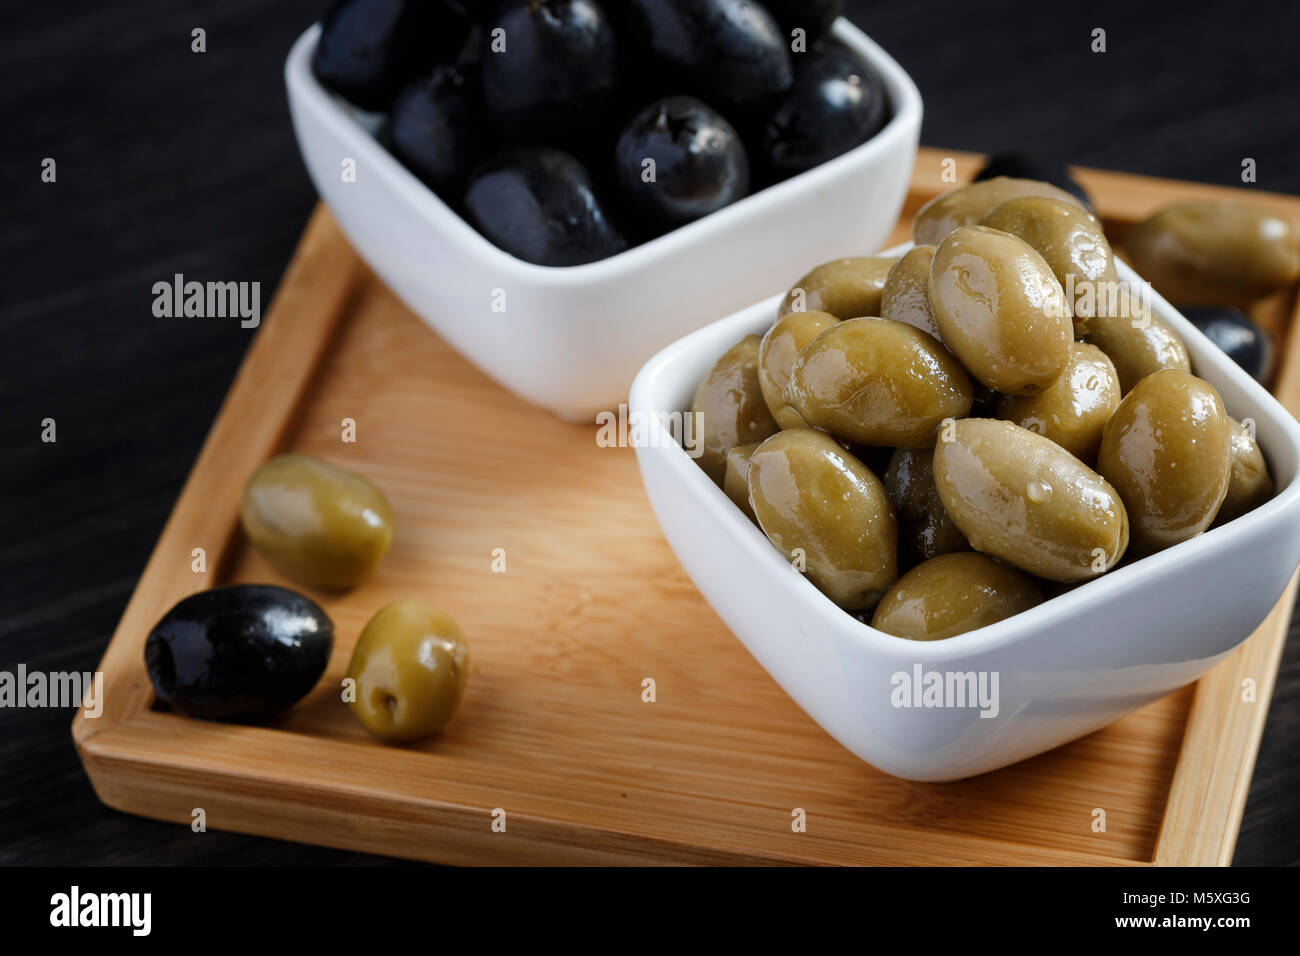 Olives noires et vertes dans un bol blanc sur une table en bois sombre. Banque D'Images